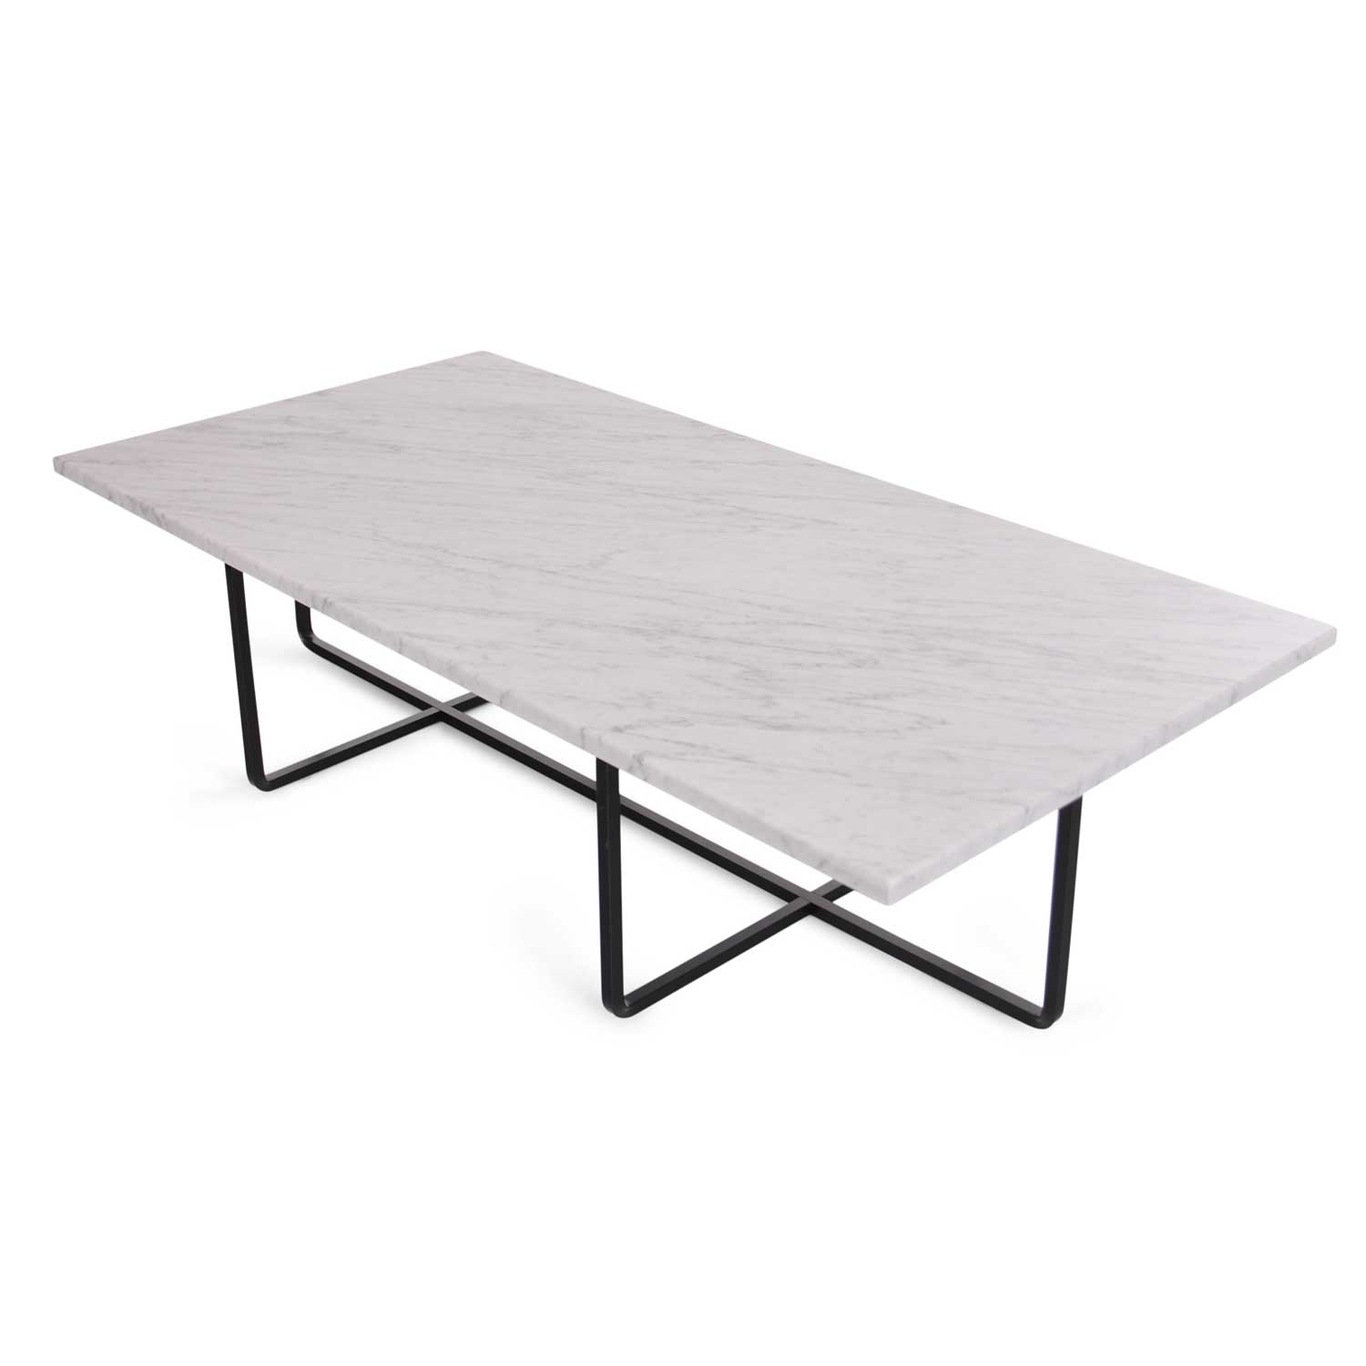 Ninety Sohvapöytä 120x60cm, Valkoinen Marmori/Musta